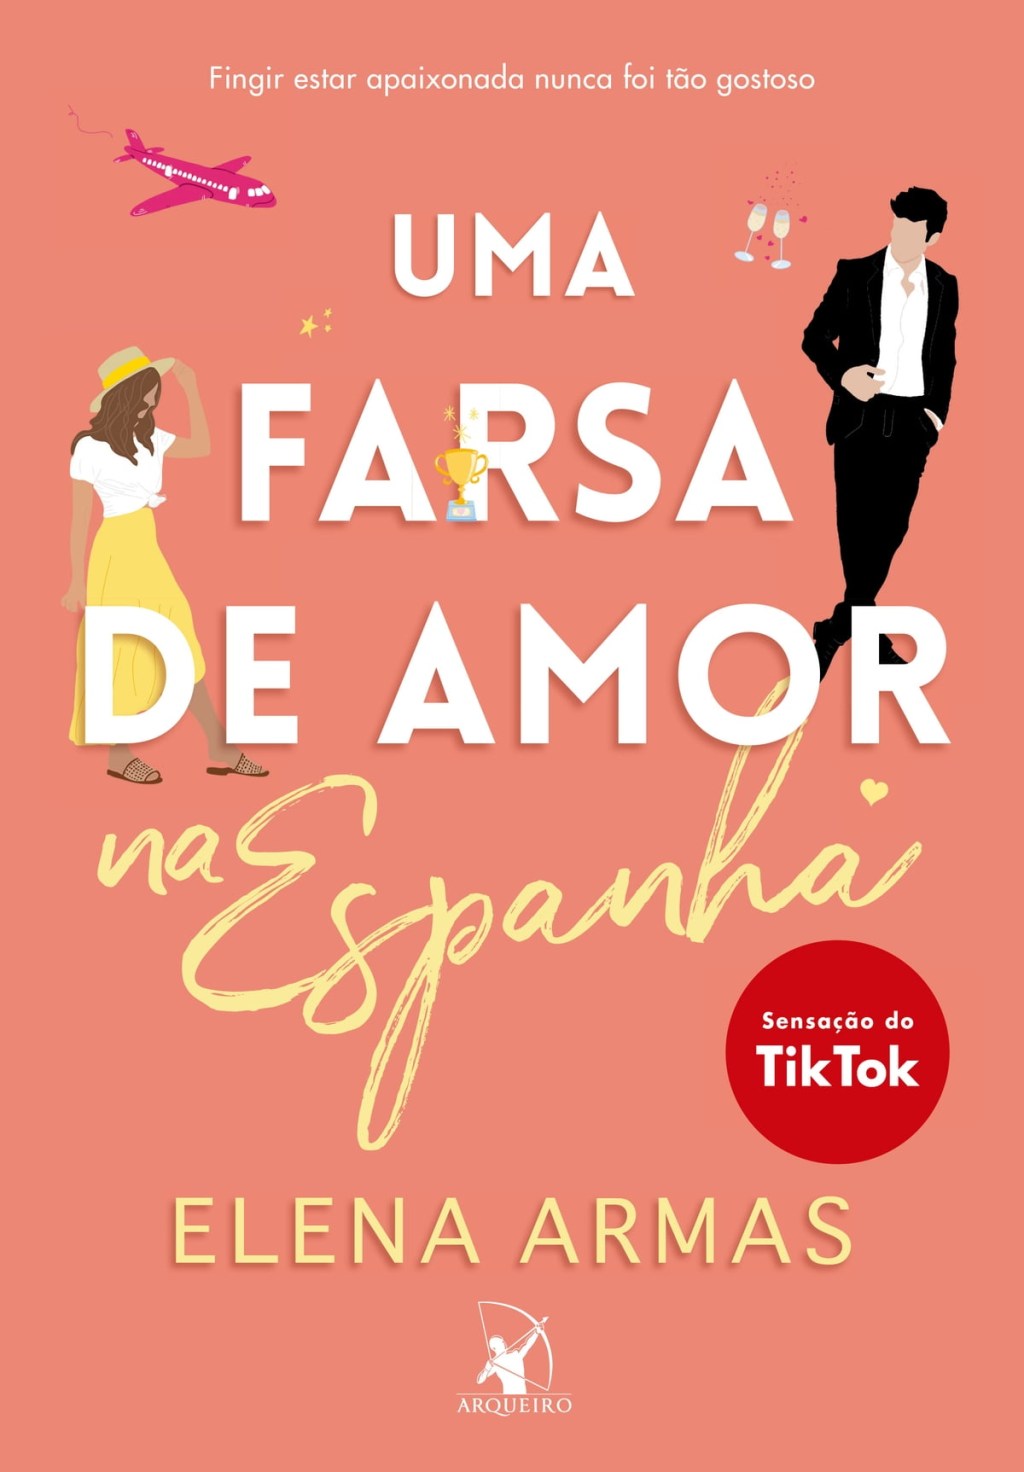 Capa do livro 'Uma farsa de amor', de Elena Armas